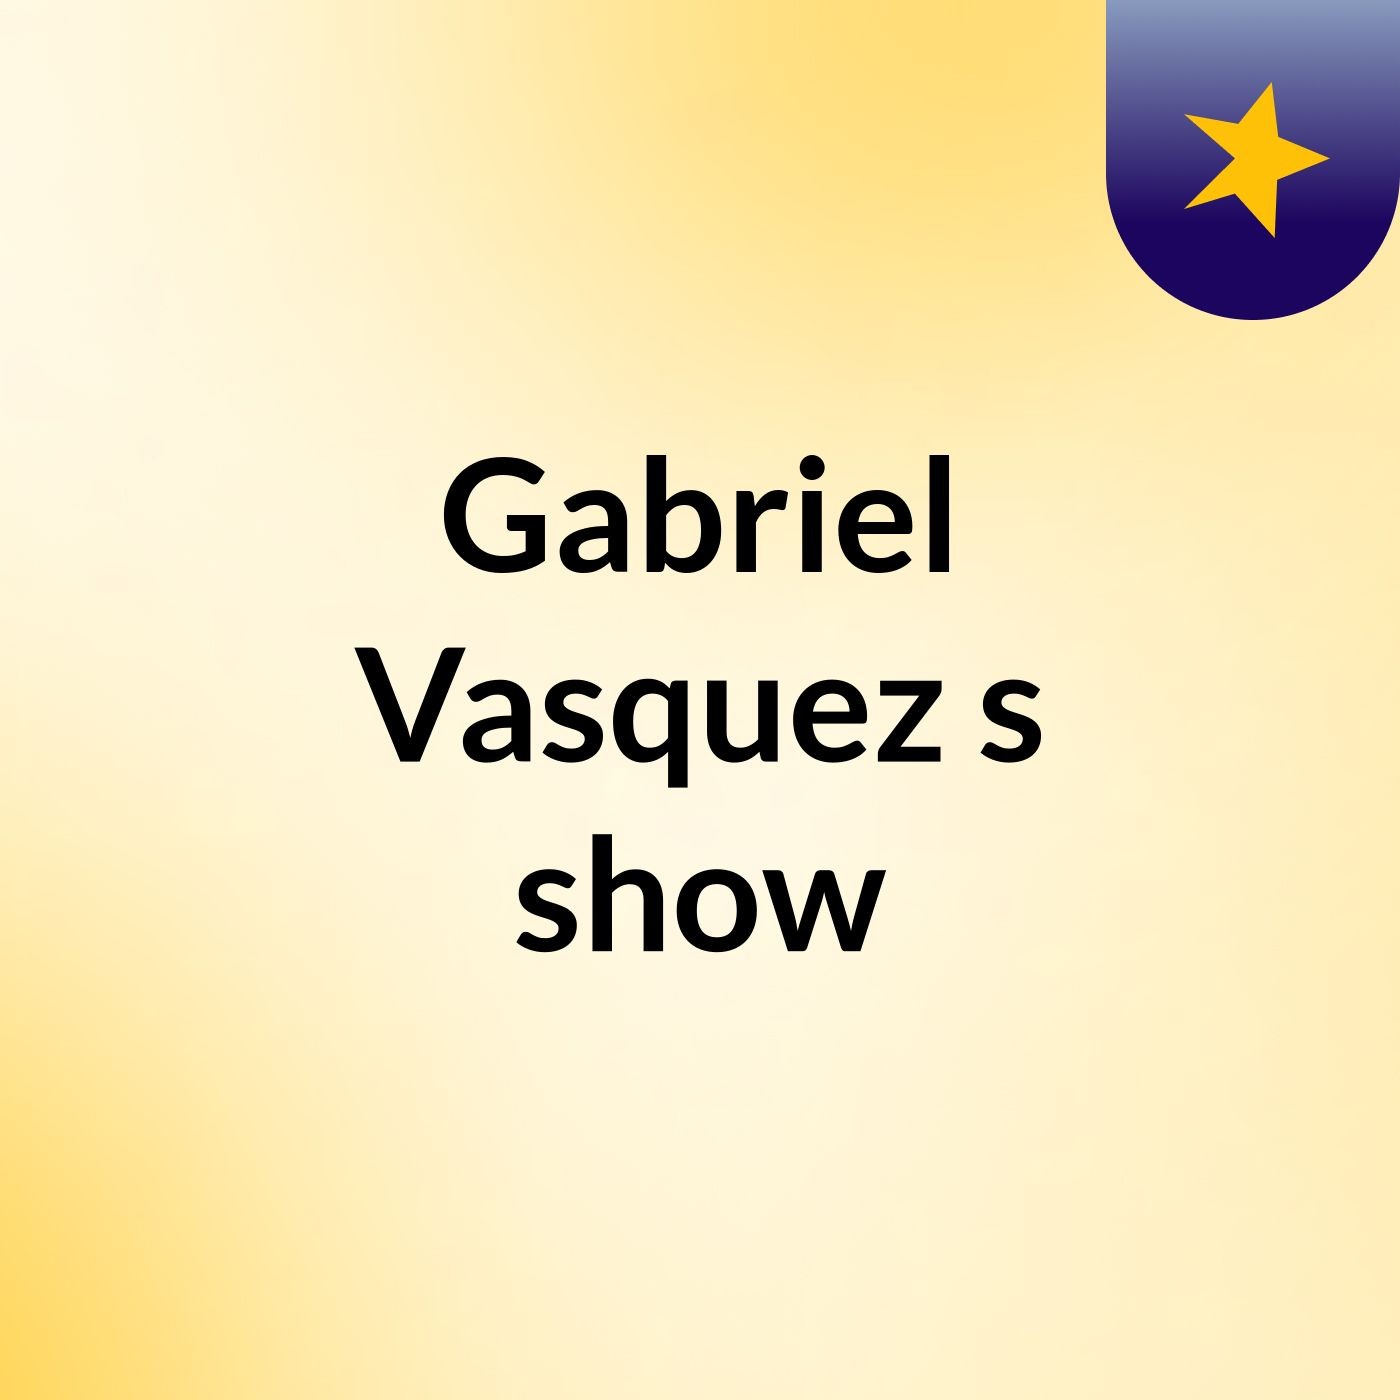 Gabriel Vasquez's show